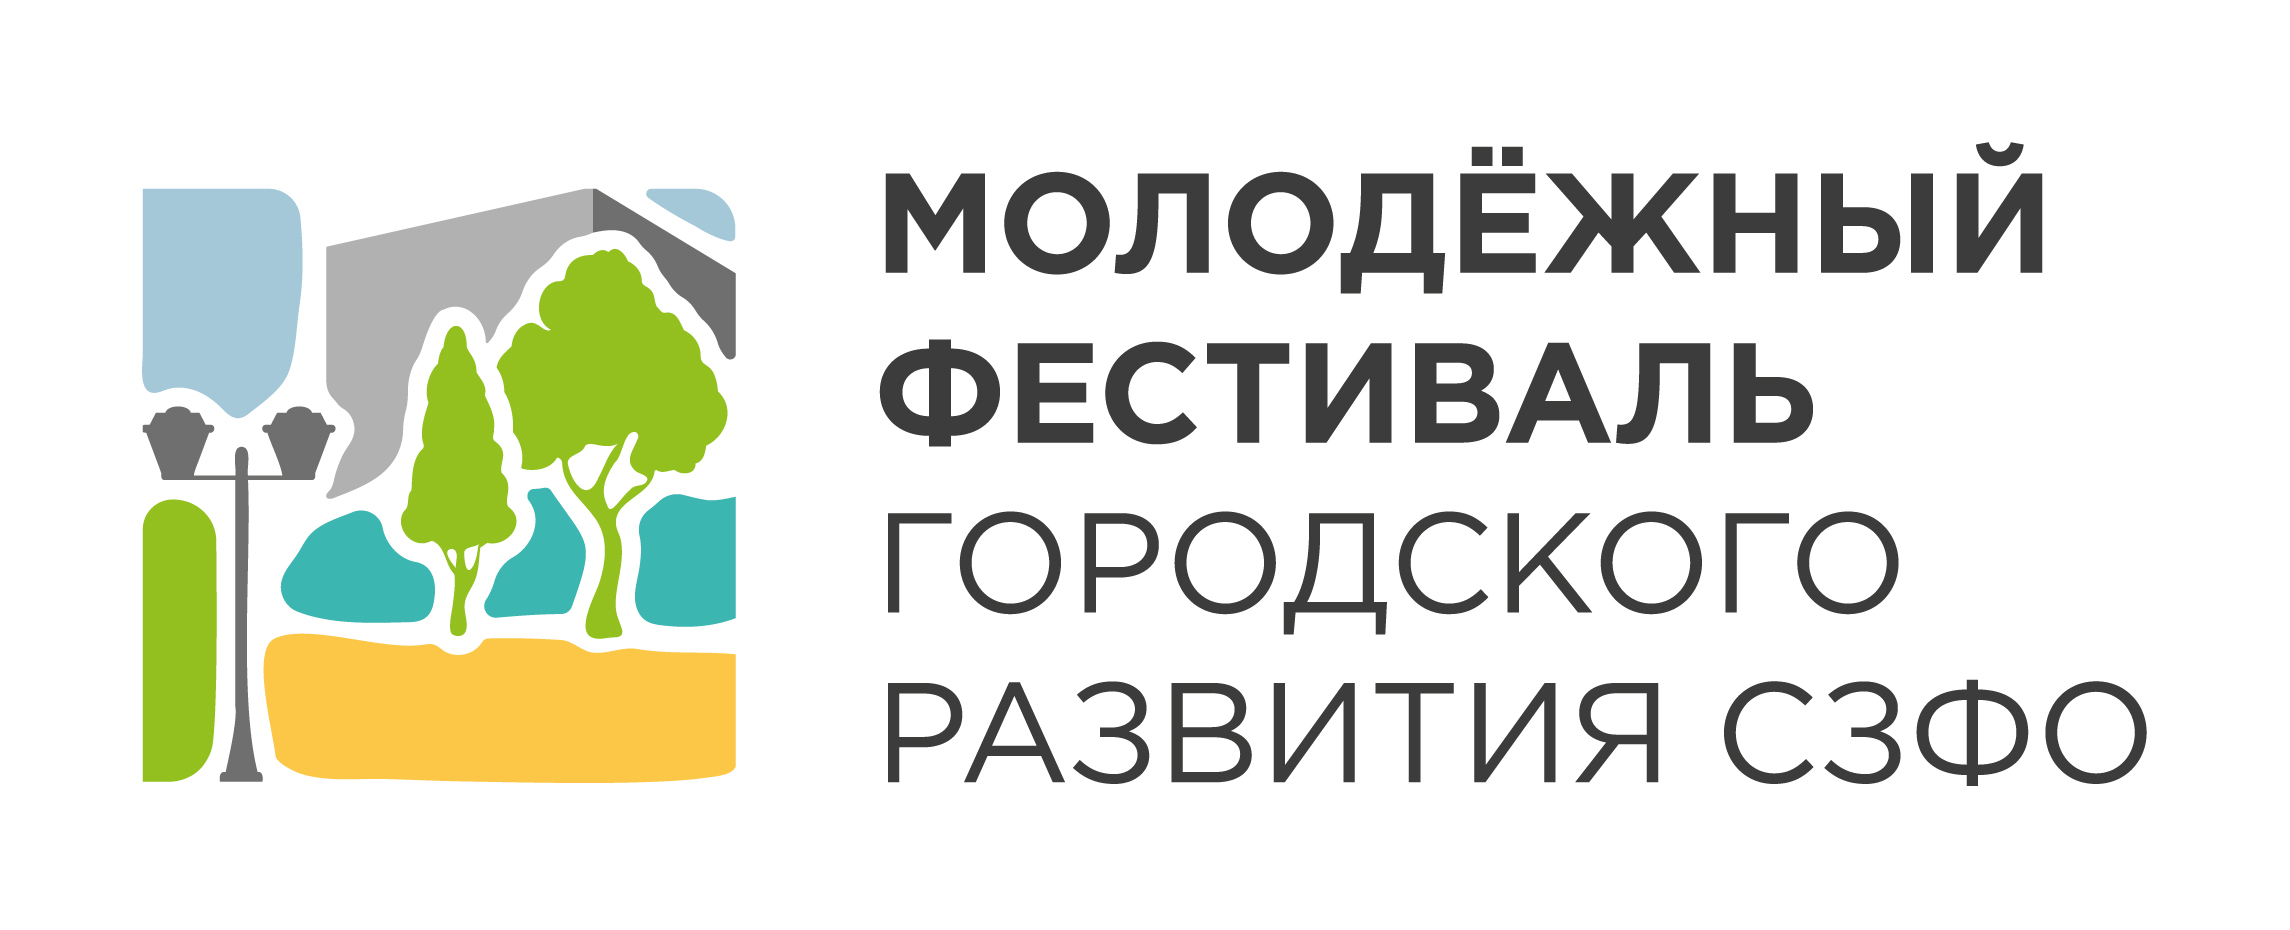 С 4 по 6 декабря в Санкт-Петербурге пройдет Молодёжный фестиваль городского развития Северо-Западного федерального округа